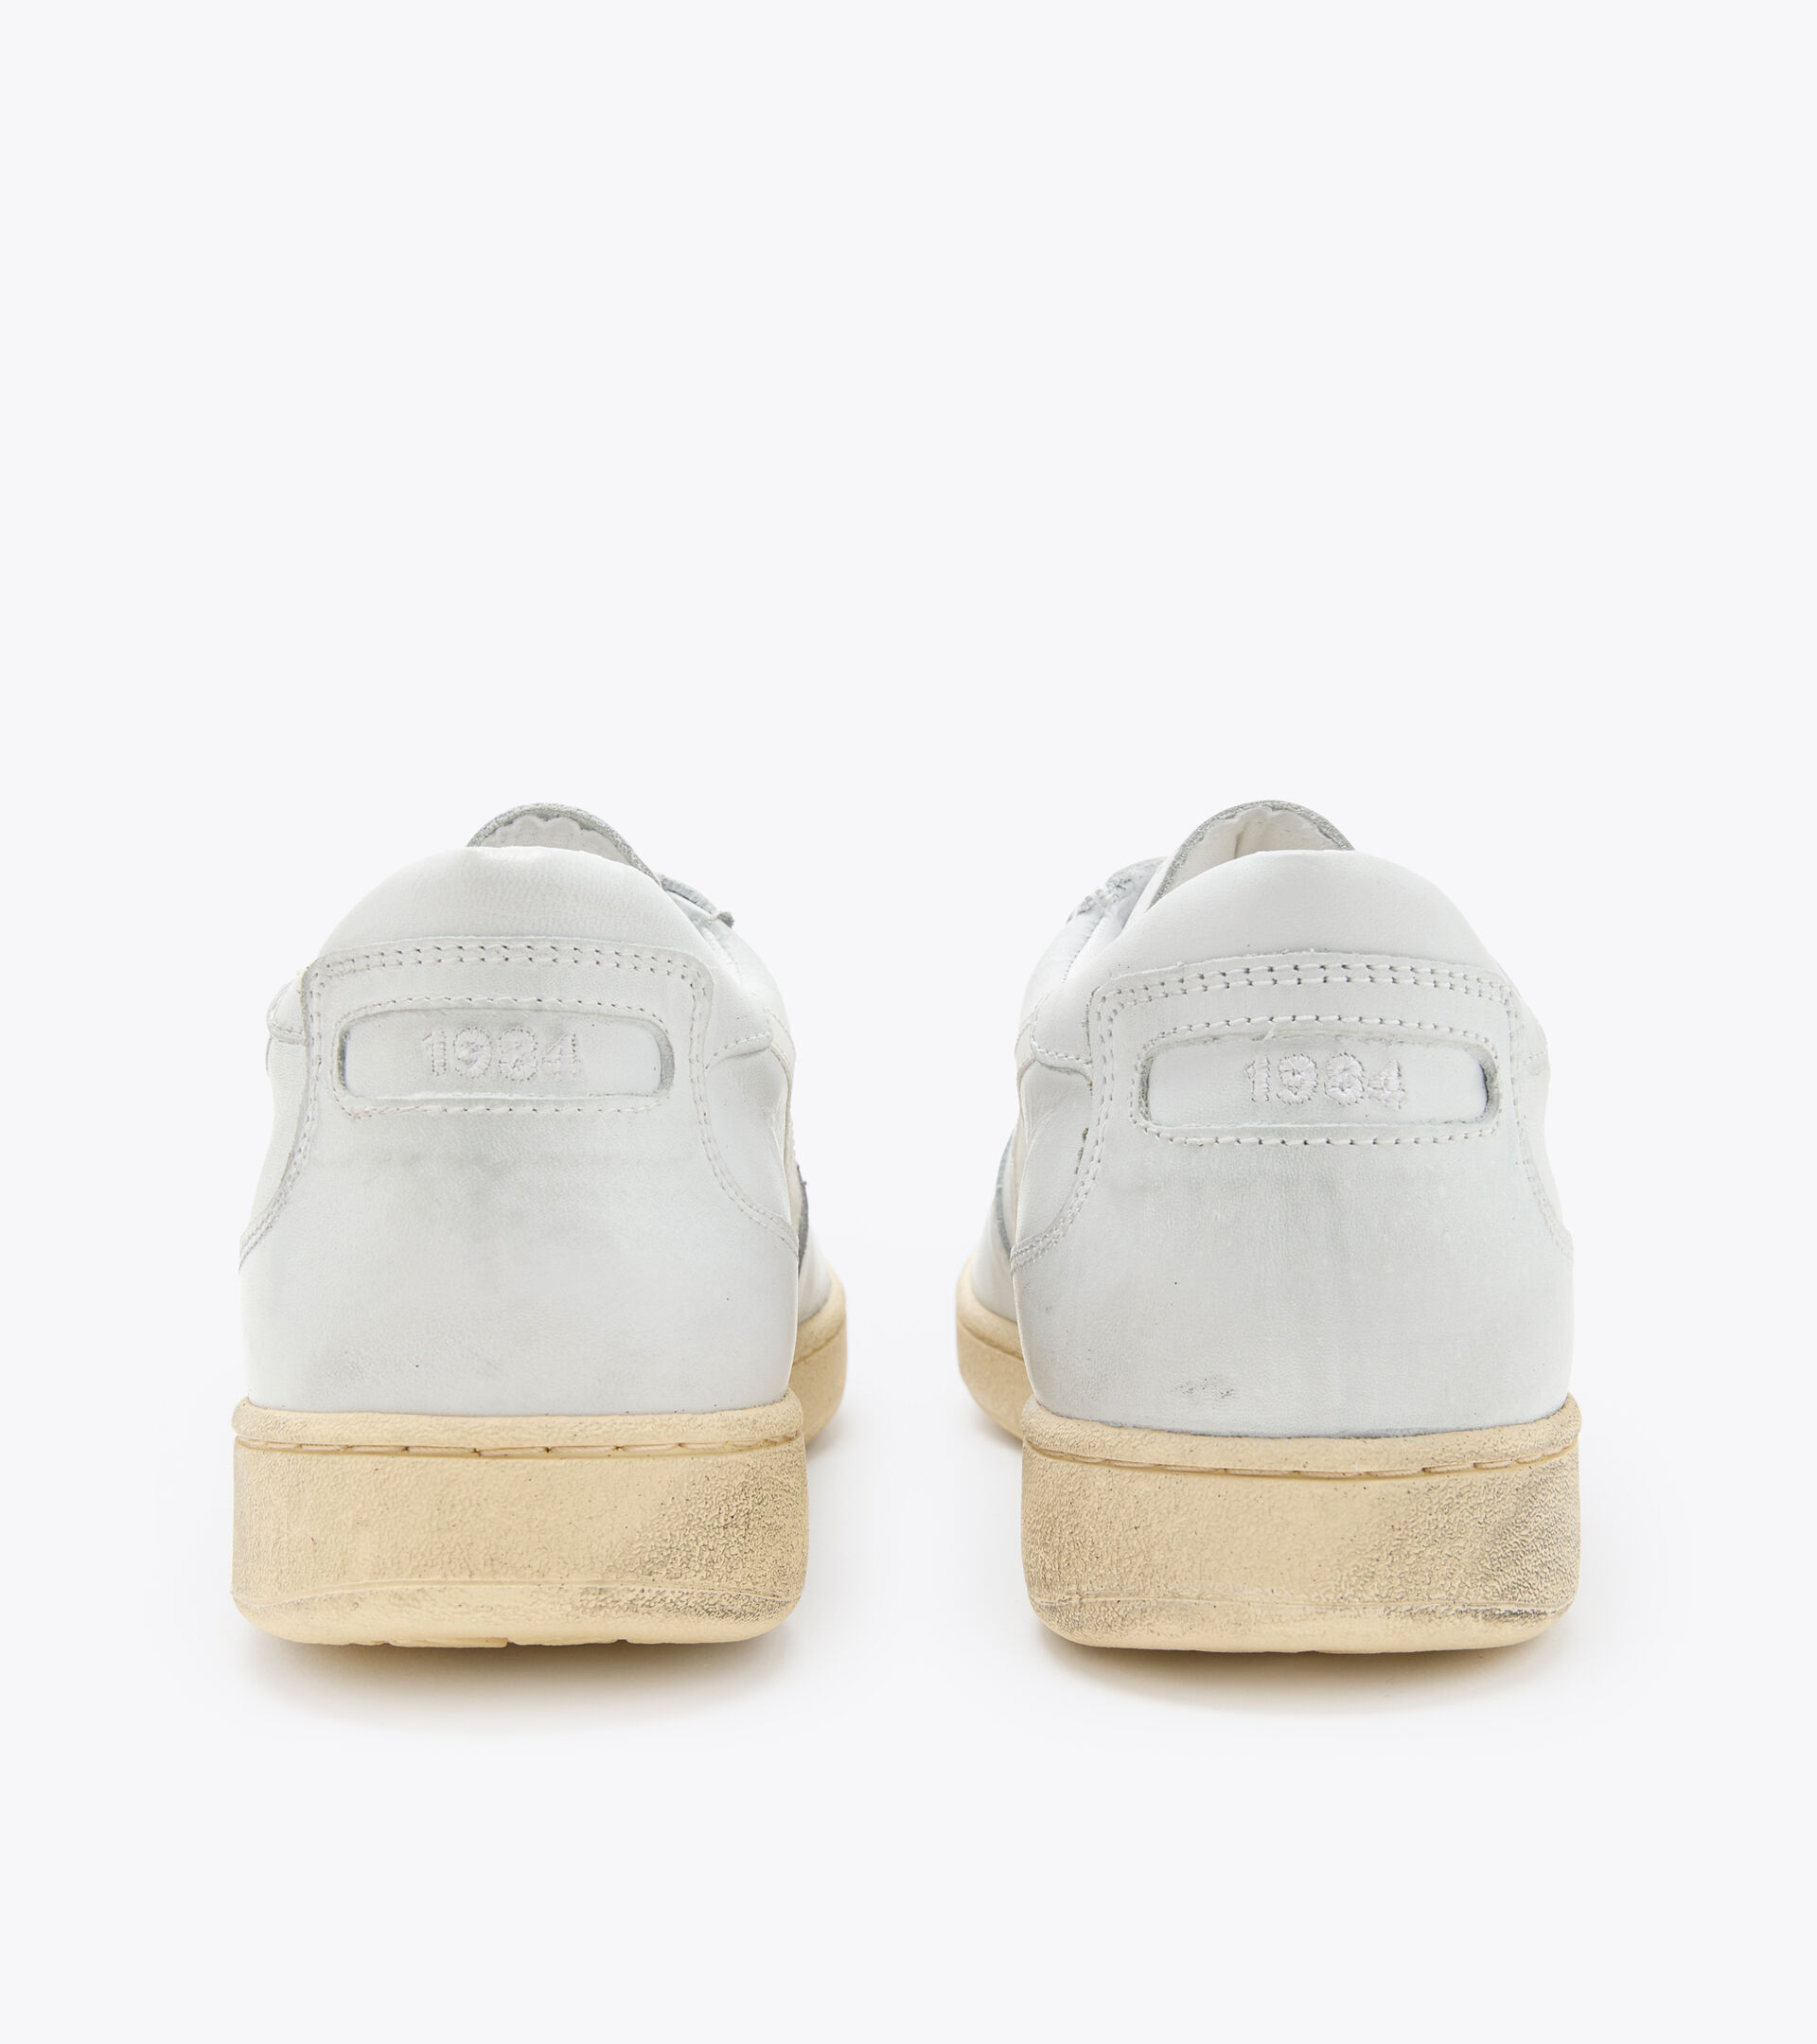 Heritage shoes - Gender neutral MI BASKET LOW USED WHITE /WHITE - Diadora